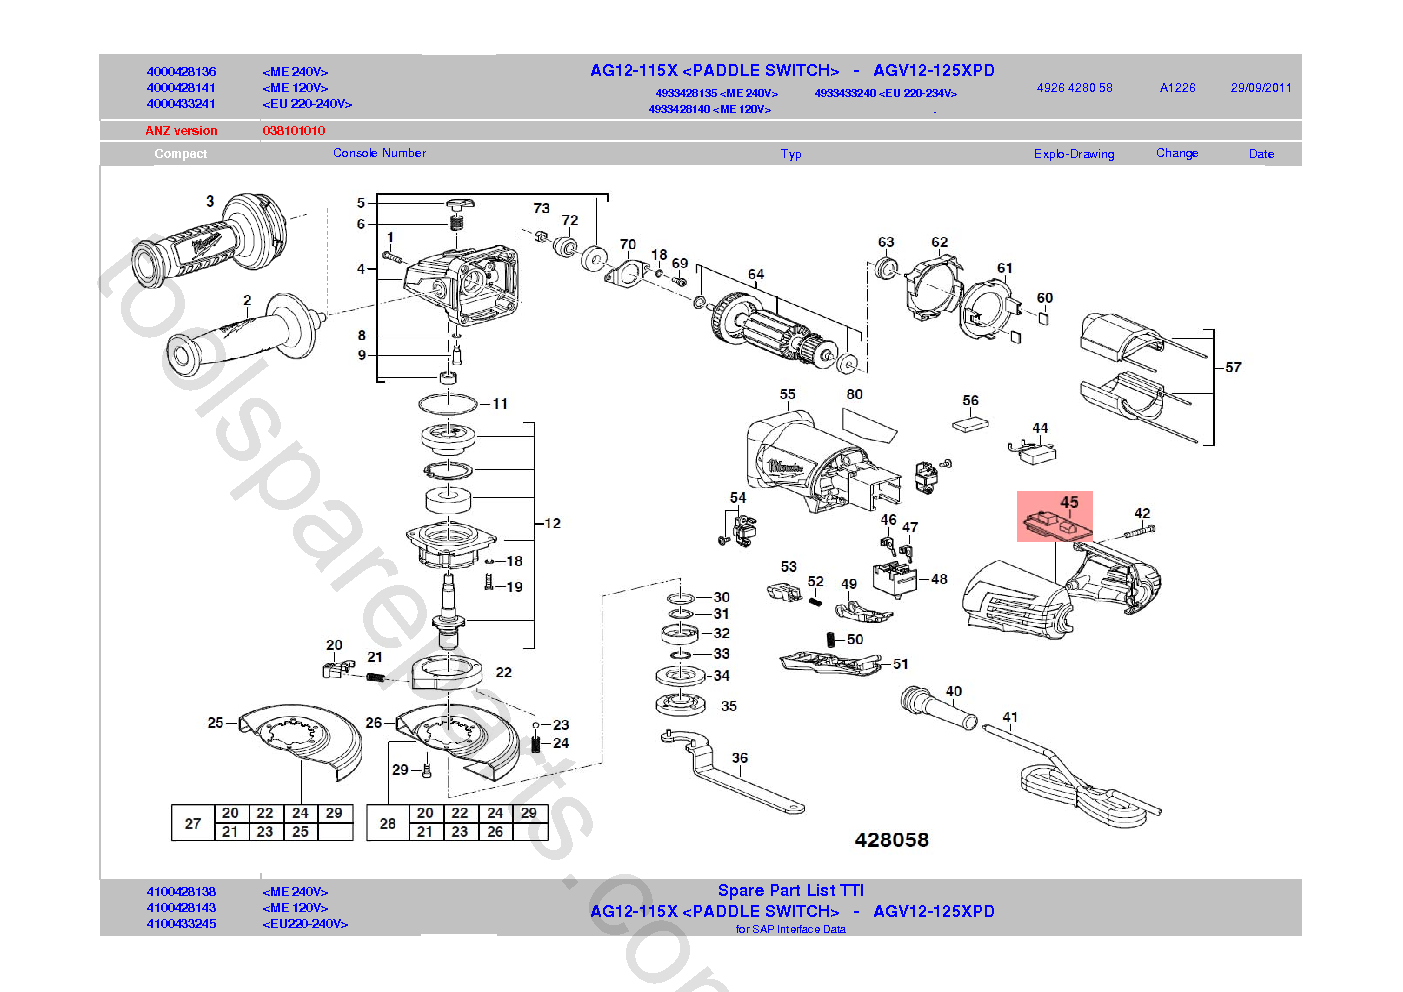 Milwaukee AGV12-125XPD  Diagram 1